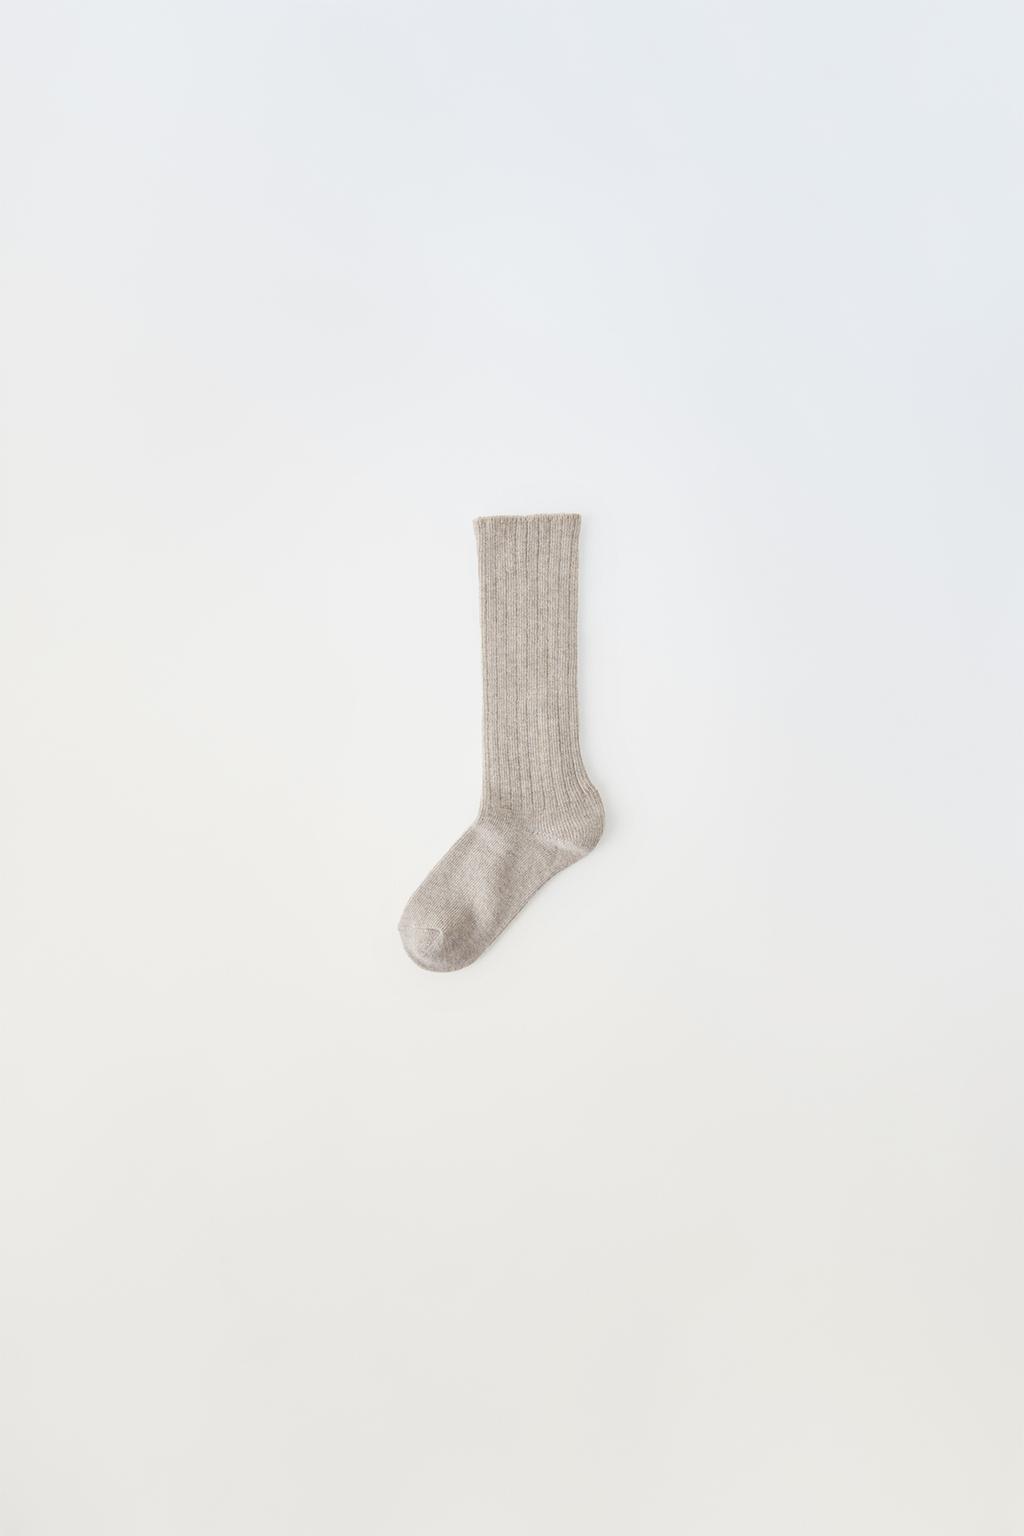 Длинные носки из шерсти ZARA, коричневый/серо-коричневый вяжем и валяем из шерсти любимые вещи